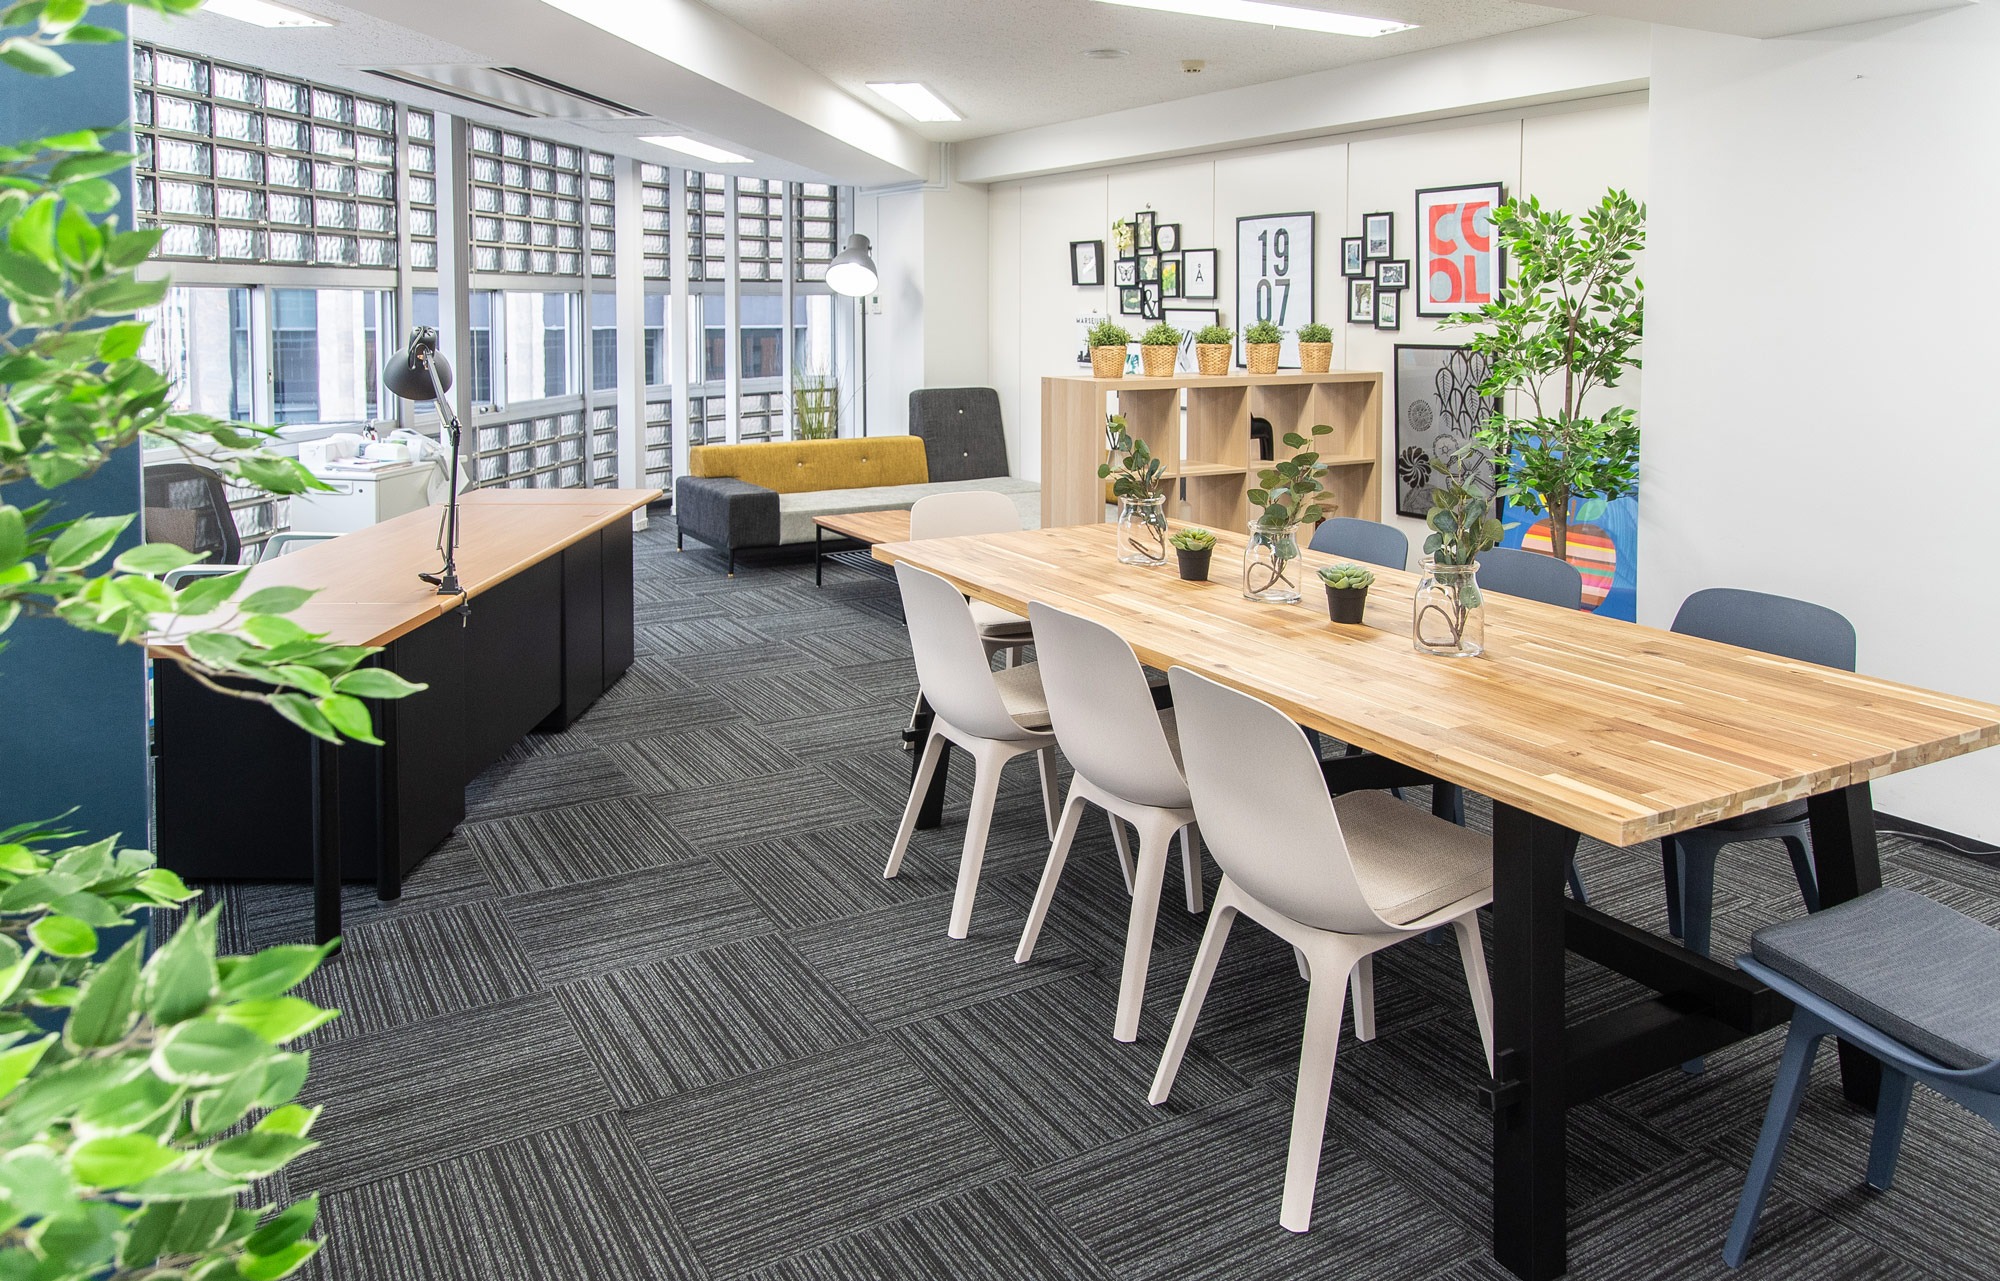 Office Interior Coordinate 都内企業さまオフィスインテリアコーディネート 03entertainment デザインのコンビニ 東京のデザイン会社03e ゼロサンエンターテインメント